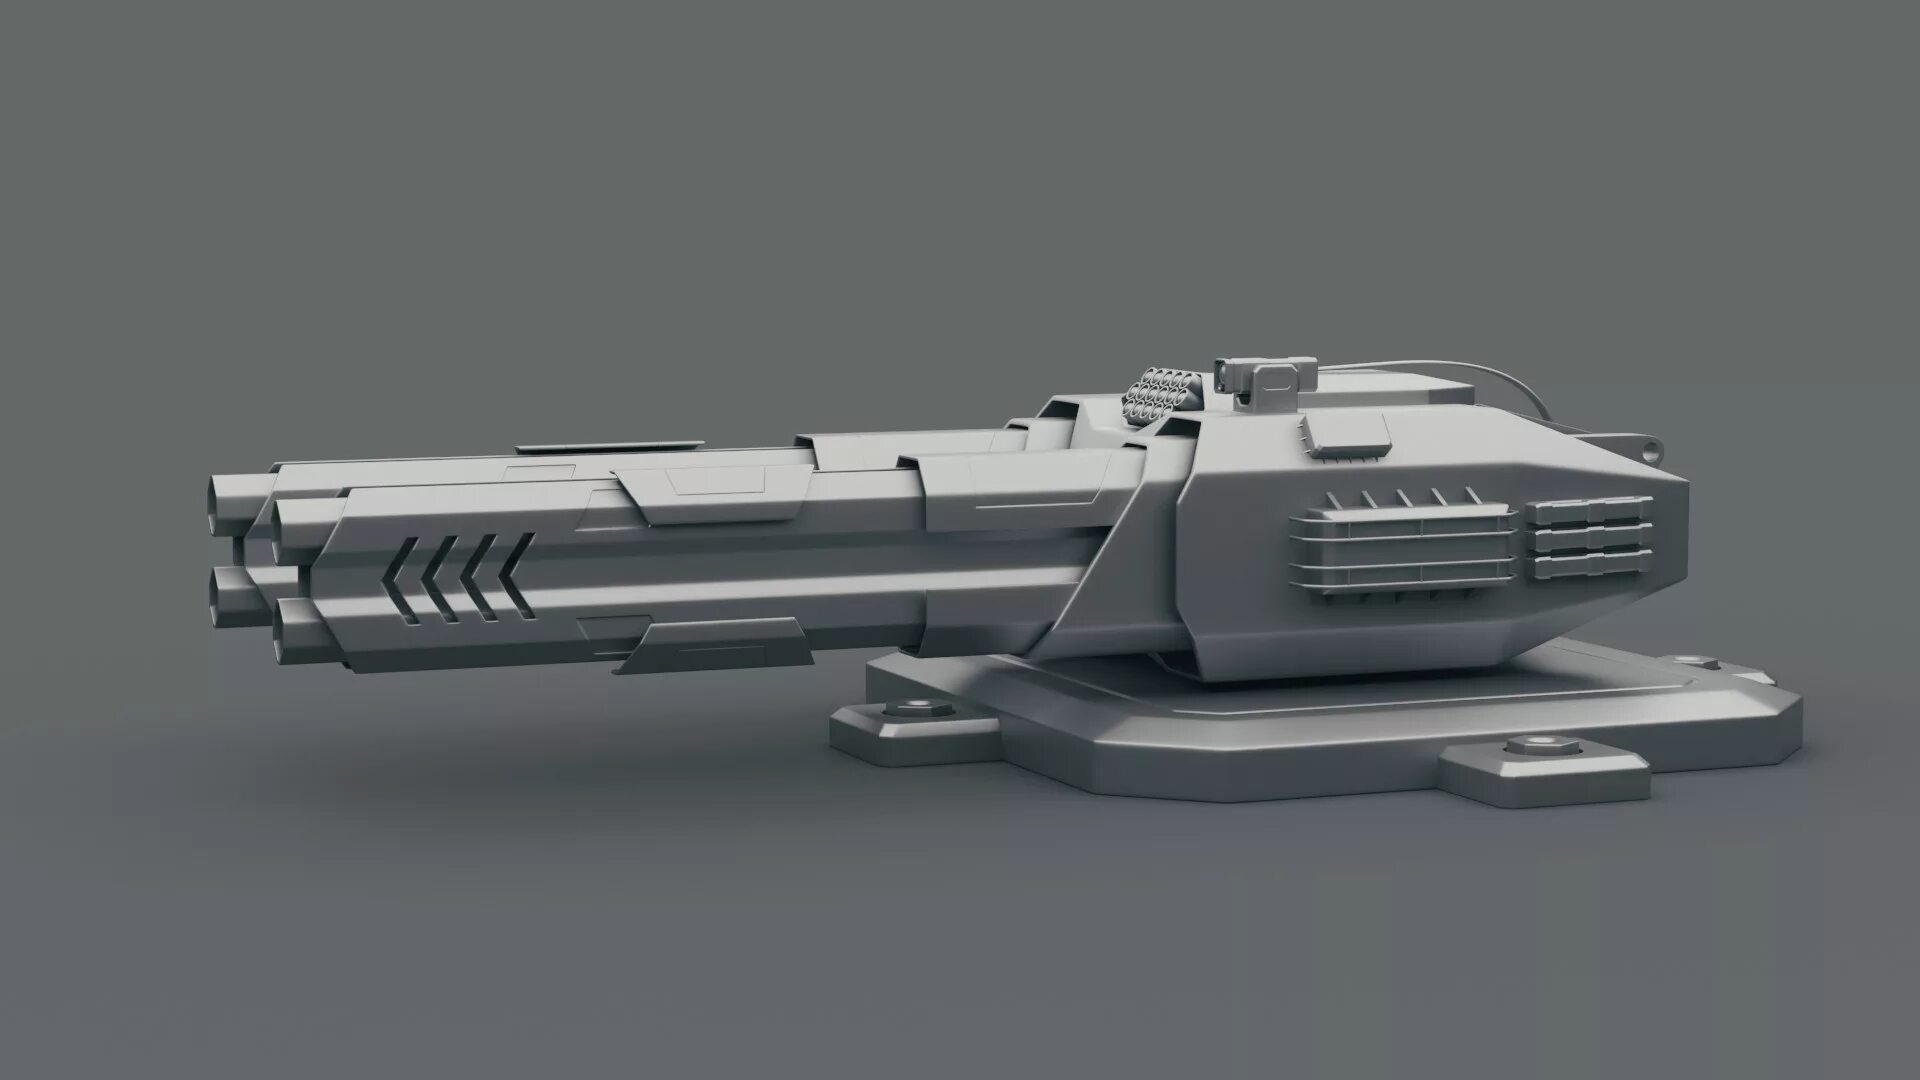 Импульсная пушка. Sci Fi лазерная турель. Gun Turret концепт. Рельсовая пушка турель. Sci-Fi Gun Turret концепт.